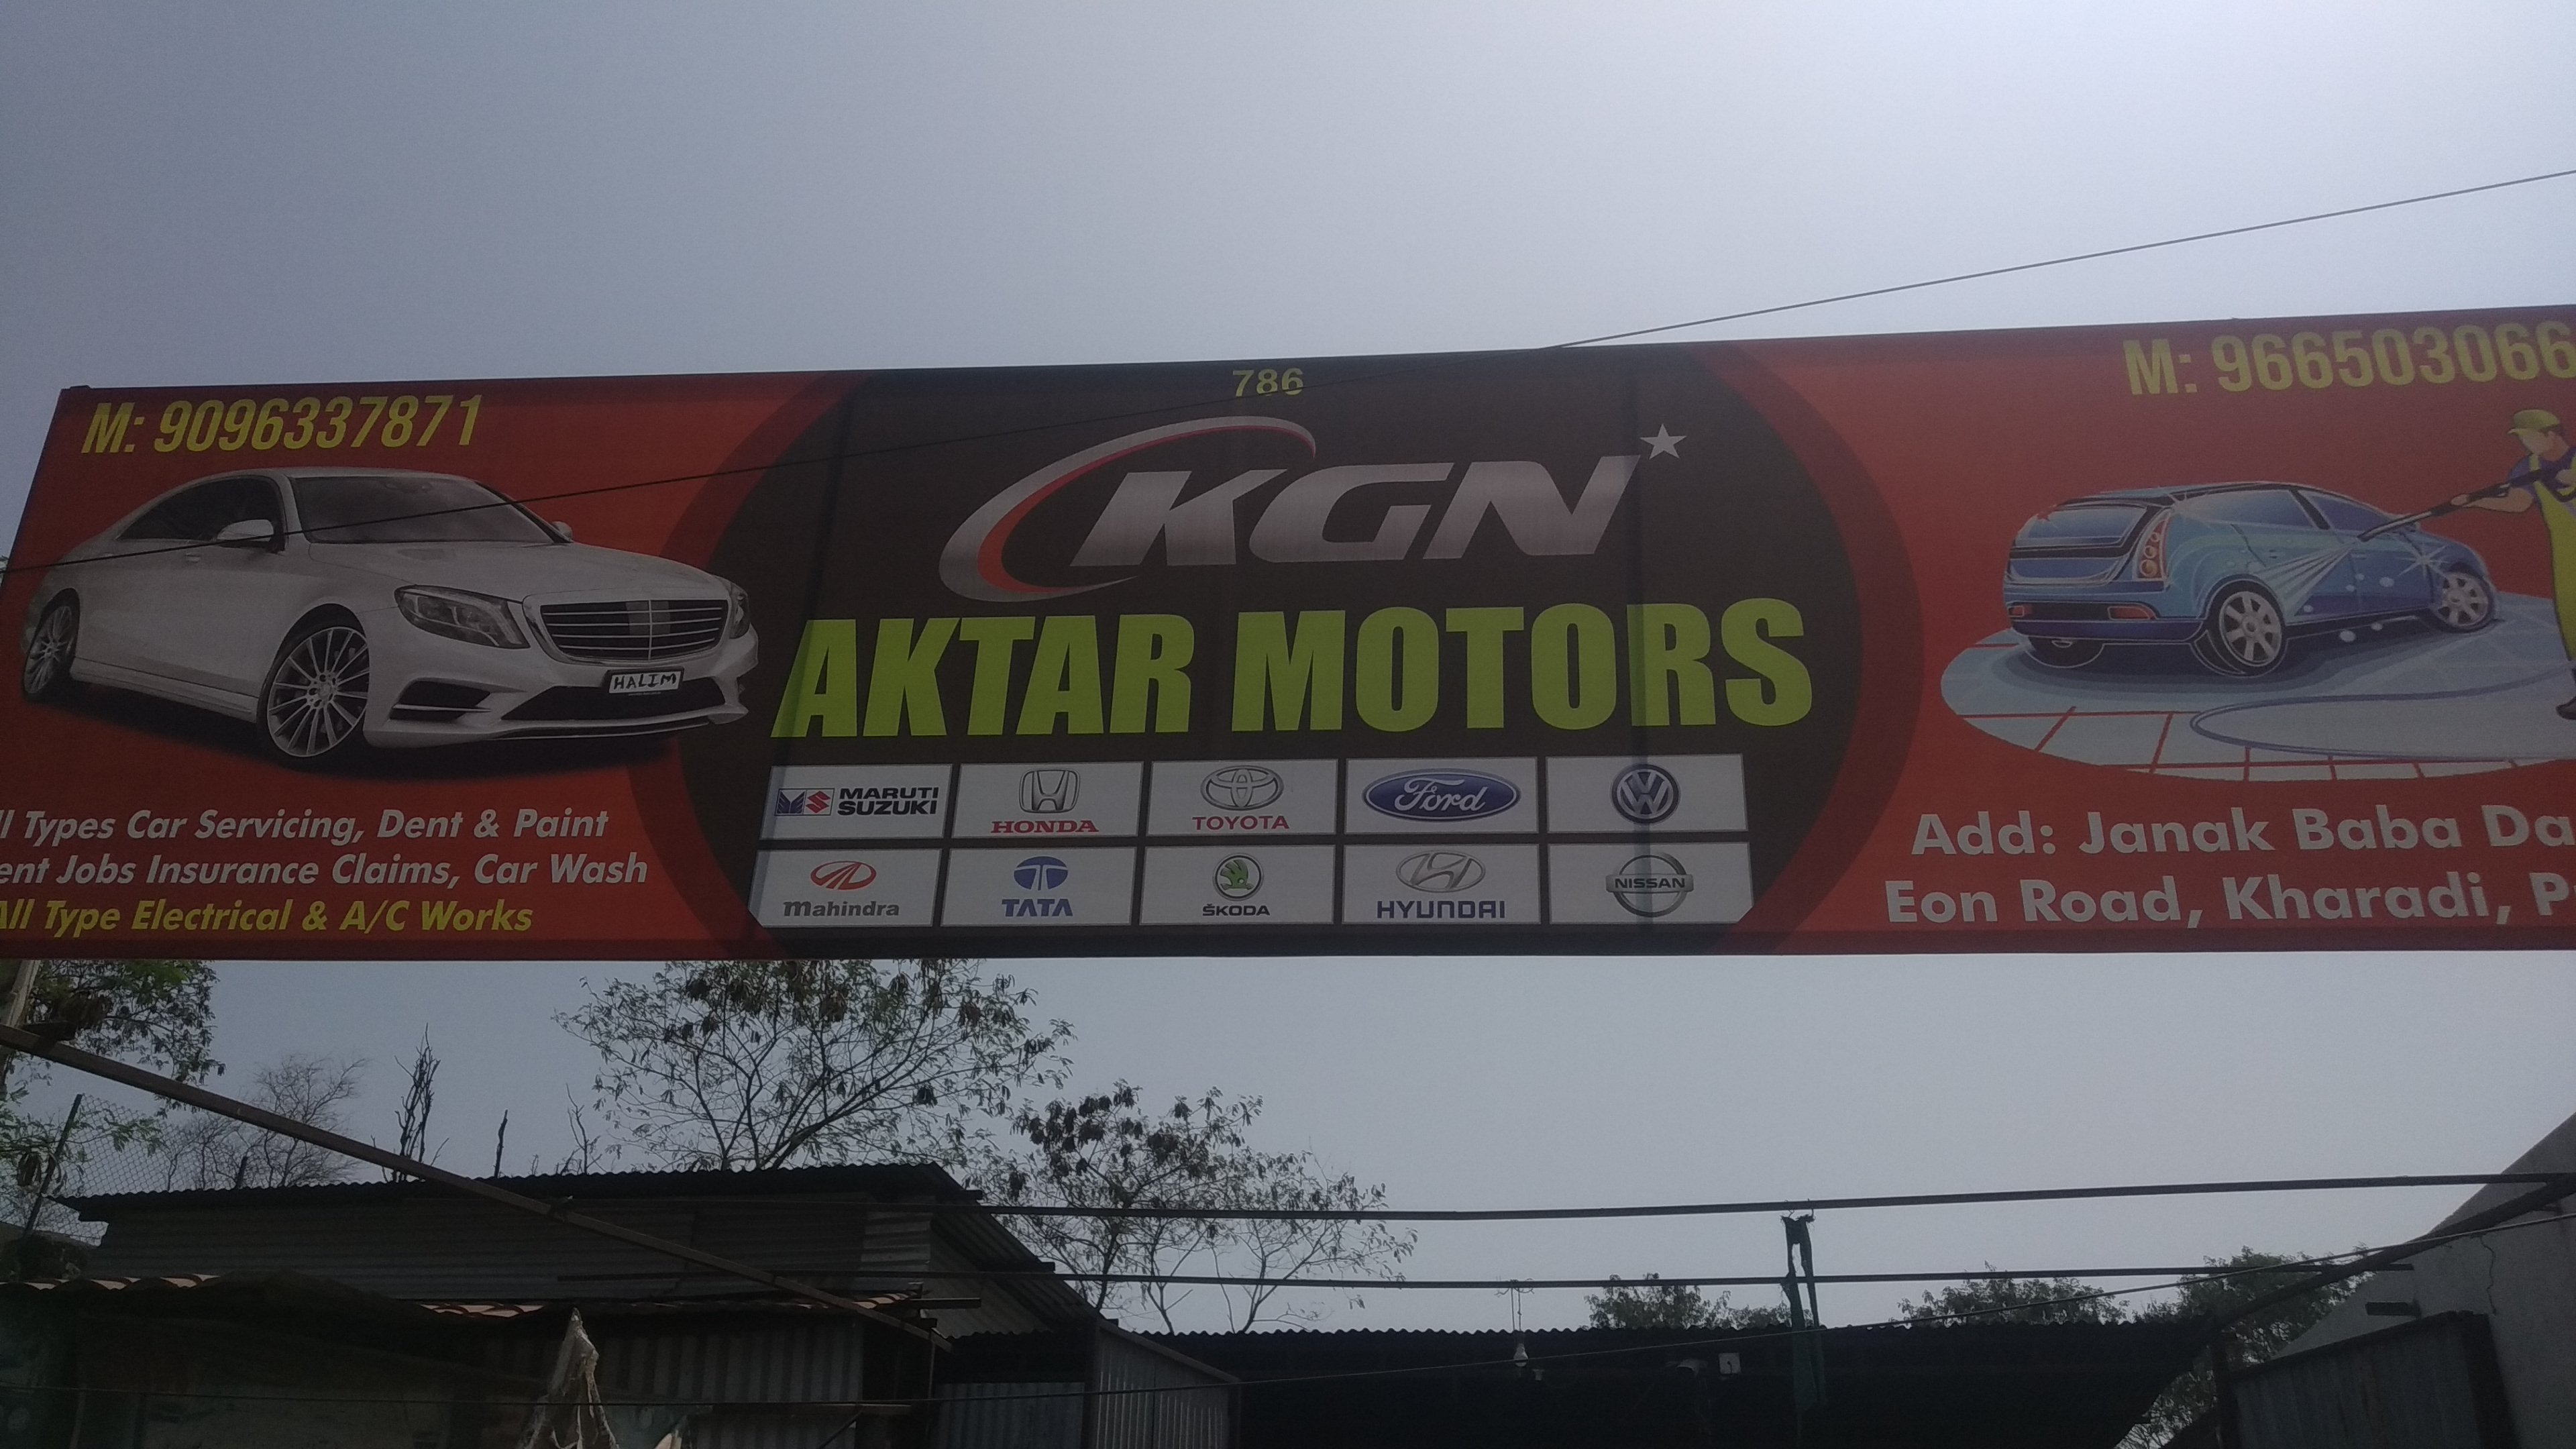 KGN Aktar Motors in Kharadi Pune at Affordable Price.